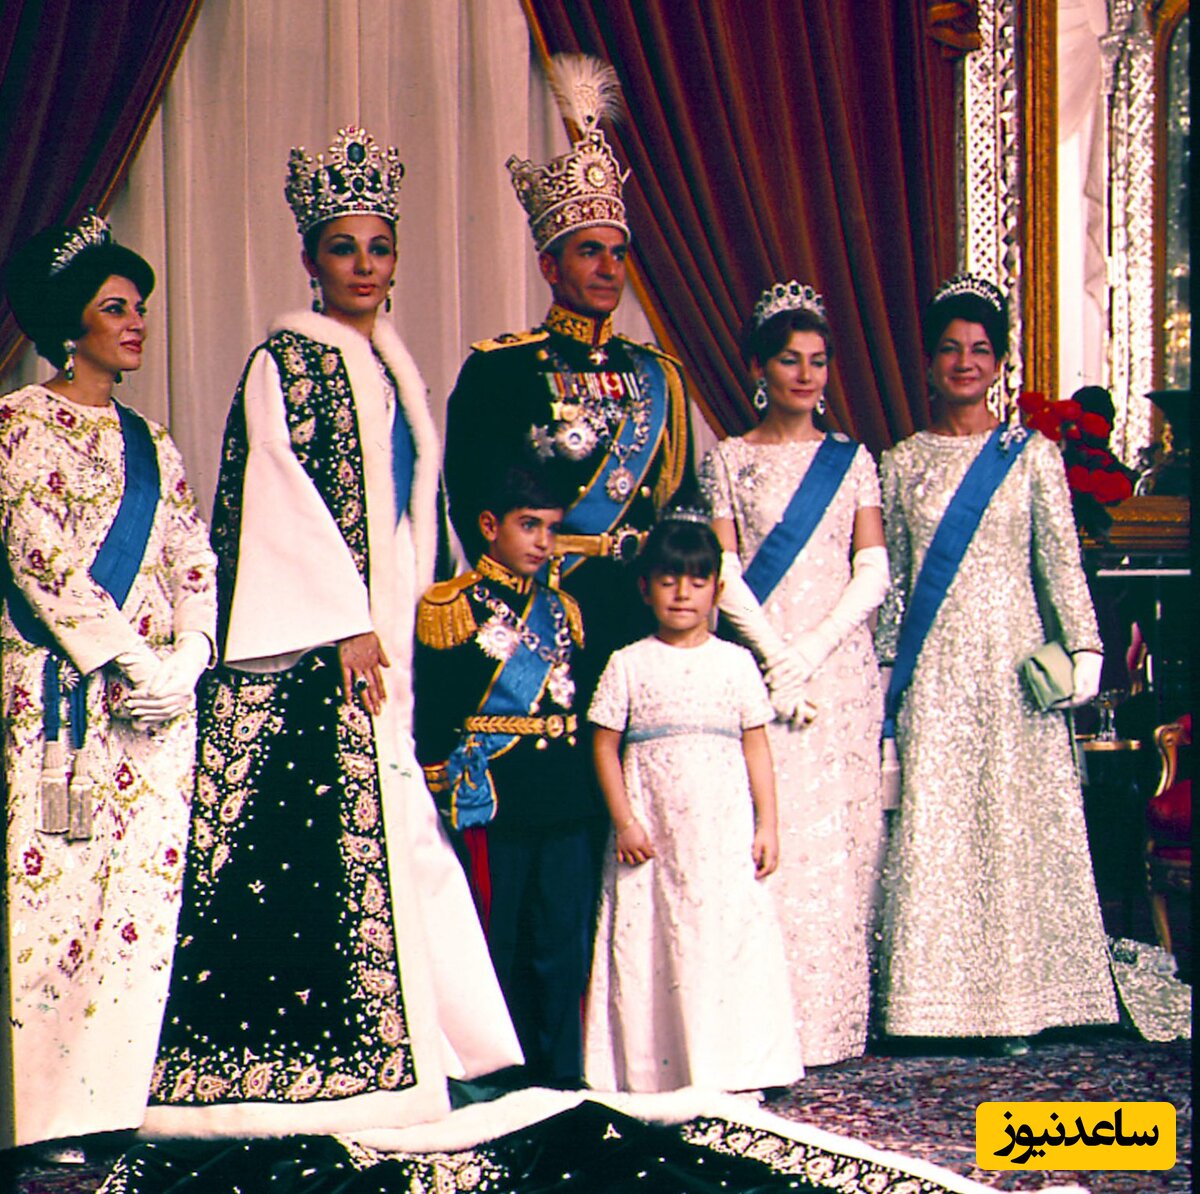  محمدرضا و فرح پهلوی بخش اعظمی از جواهرات سلطنتی را در هنگام فرار از ایران با خود بردند